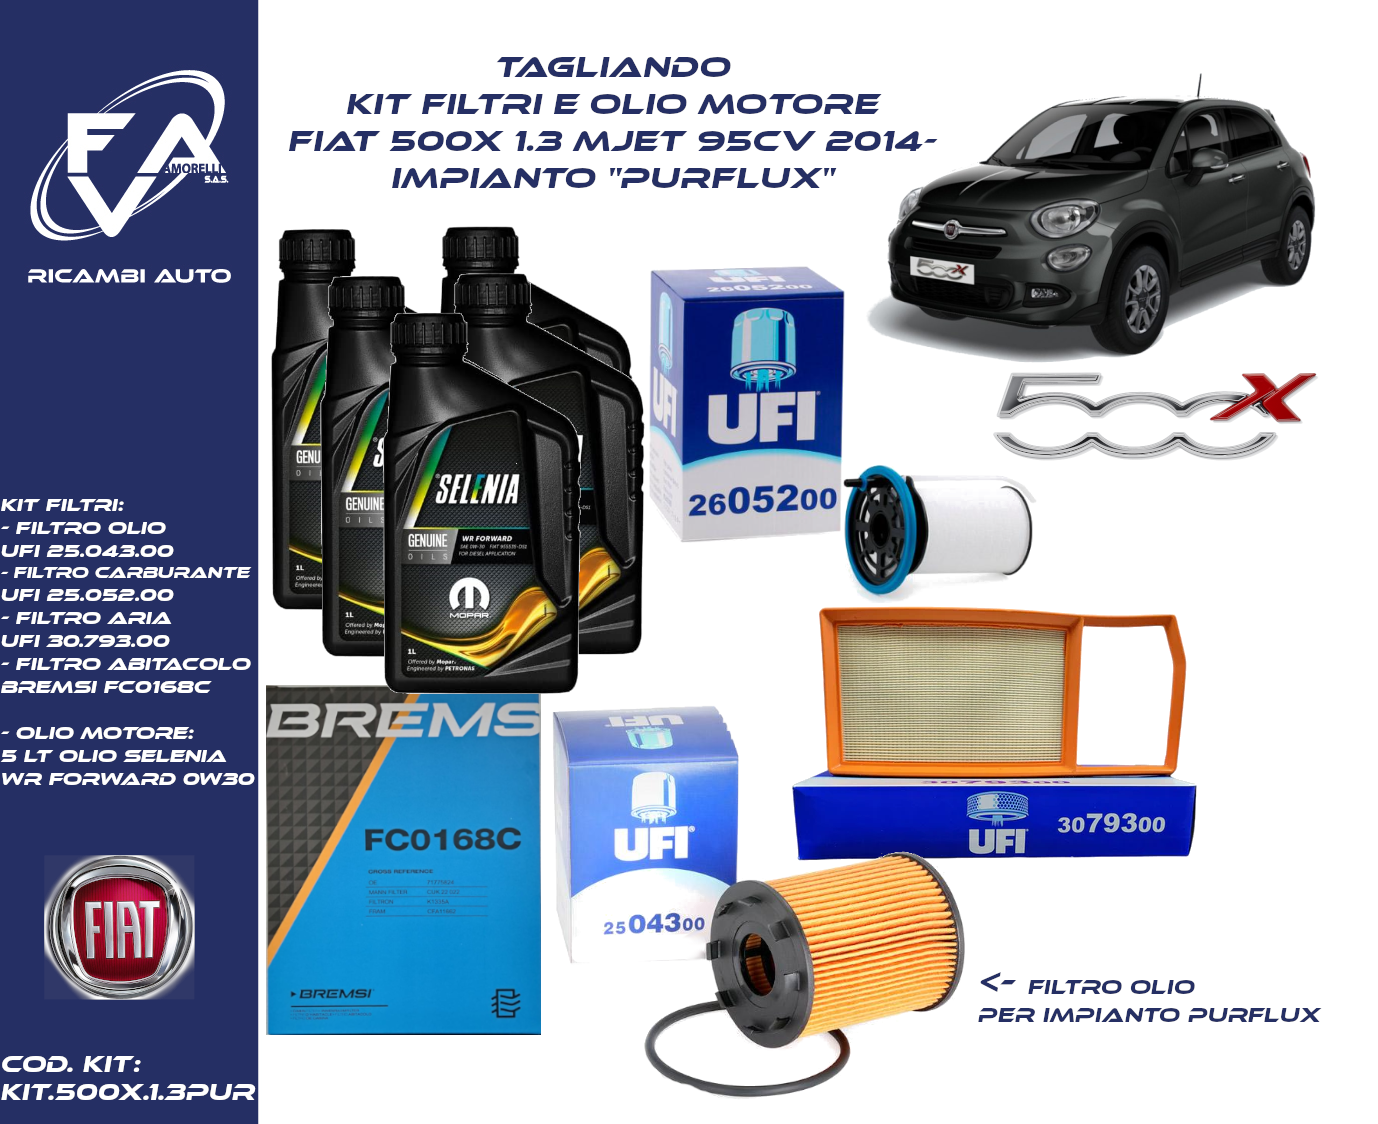 Tagliando kit filtri e Olio motore Fiat 500x 1.3 Mjet 95CV 2014- Impianto  purflux - F.A.V. di Amorelli Vincenzo & C. s.a.s.